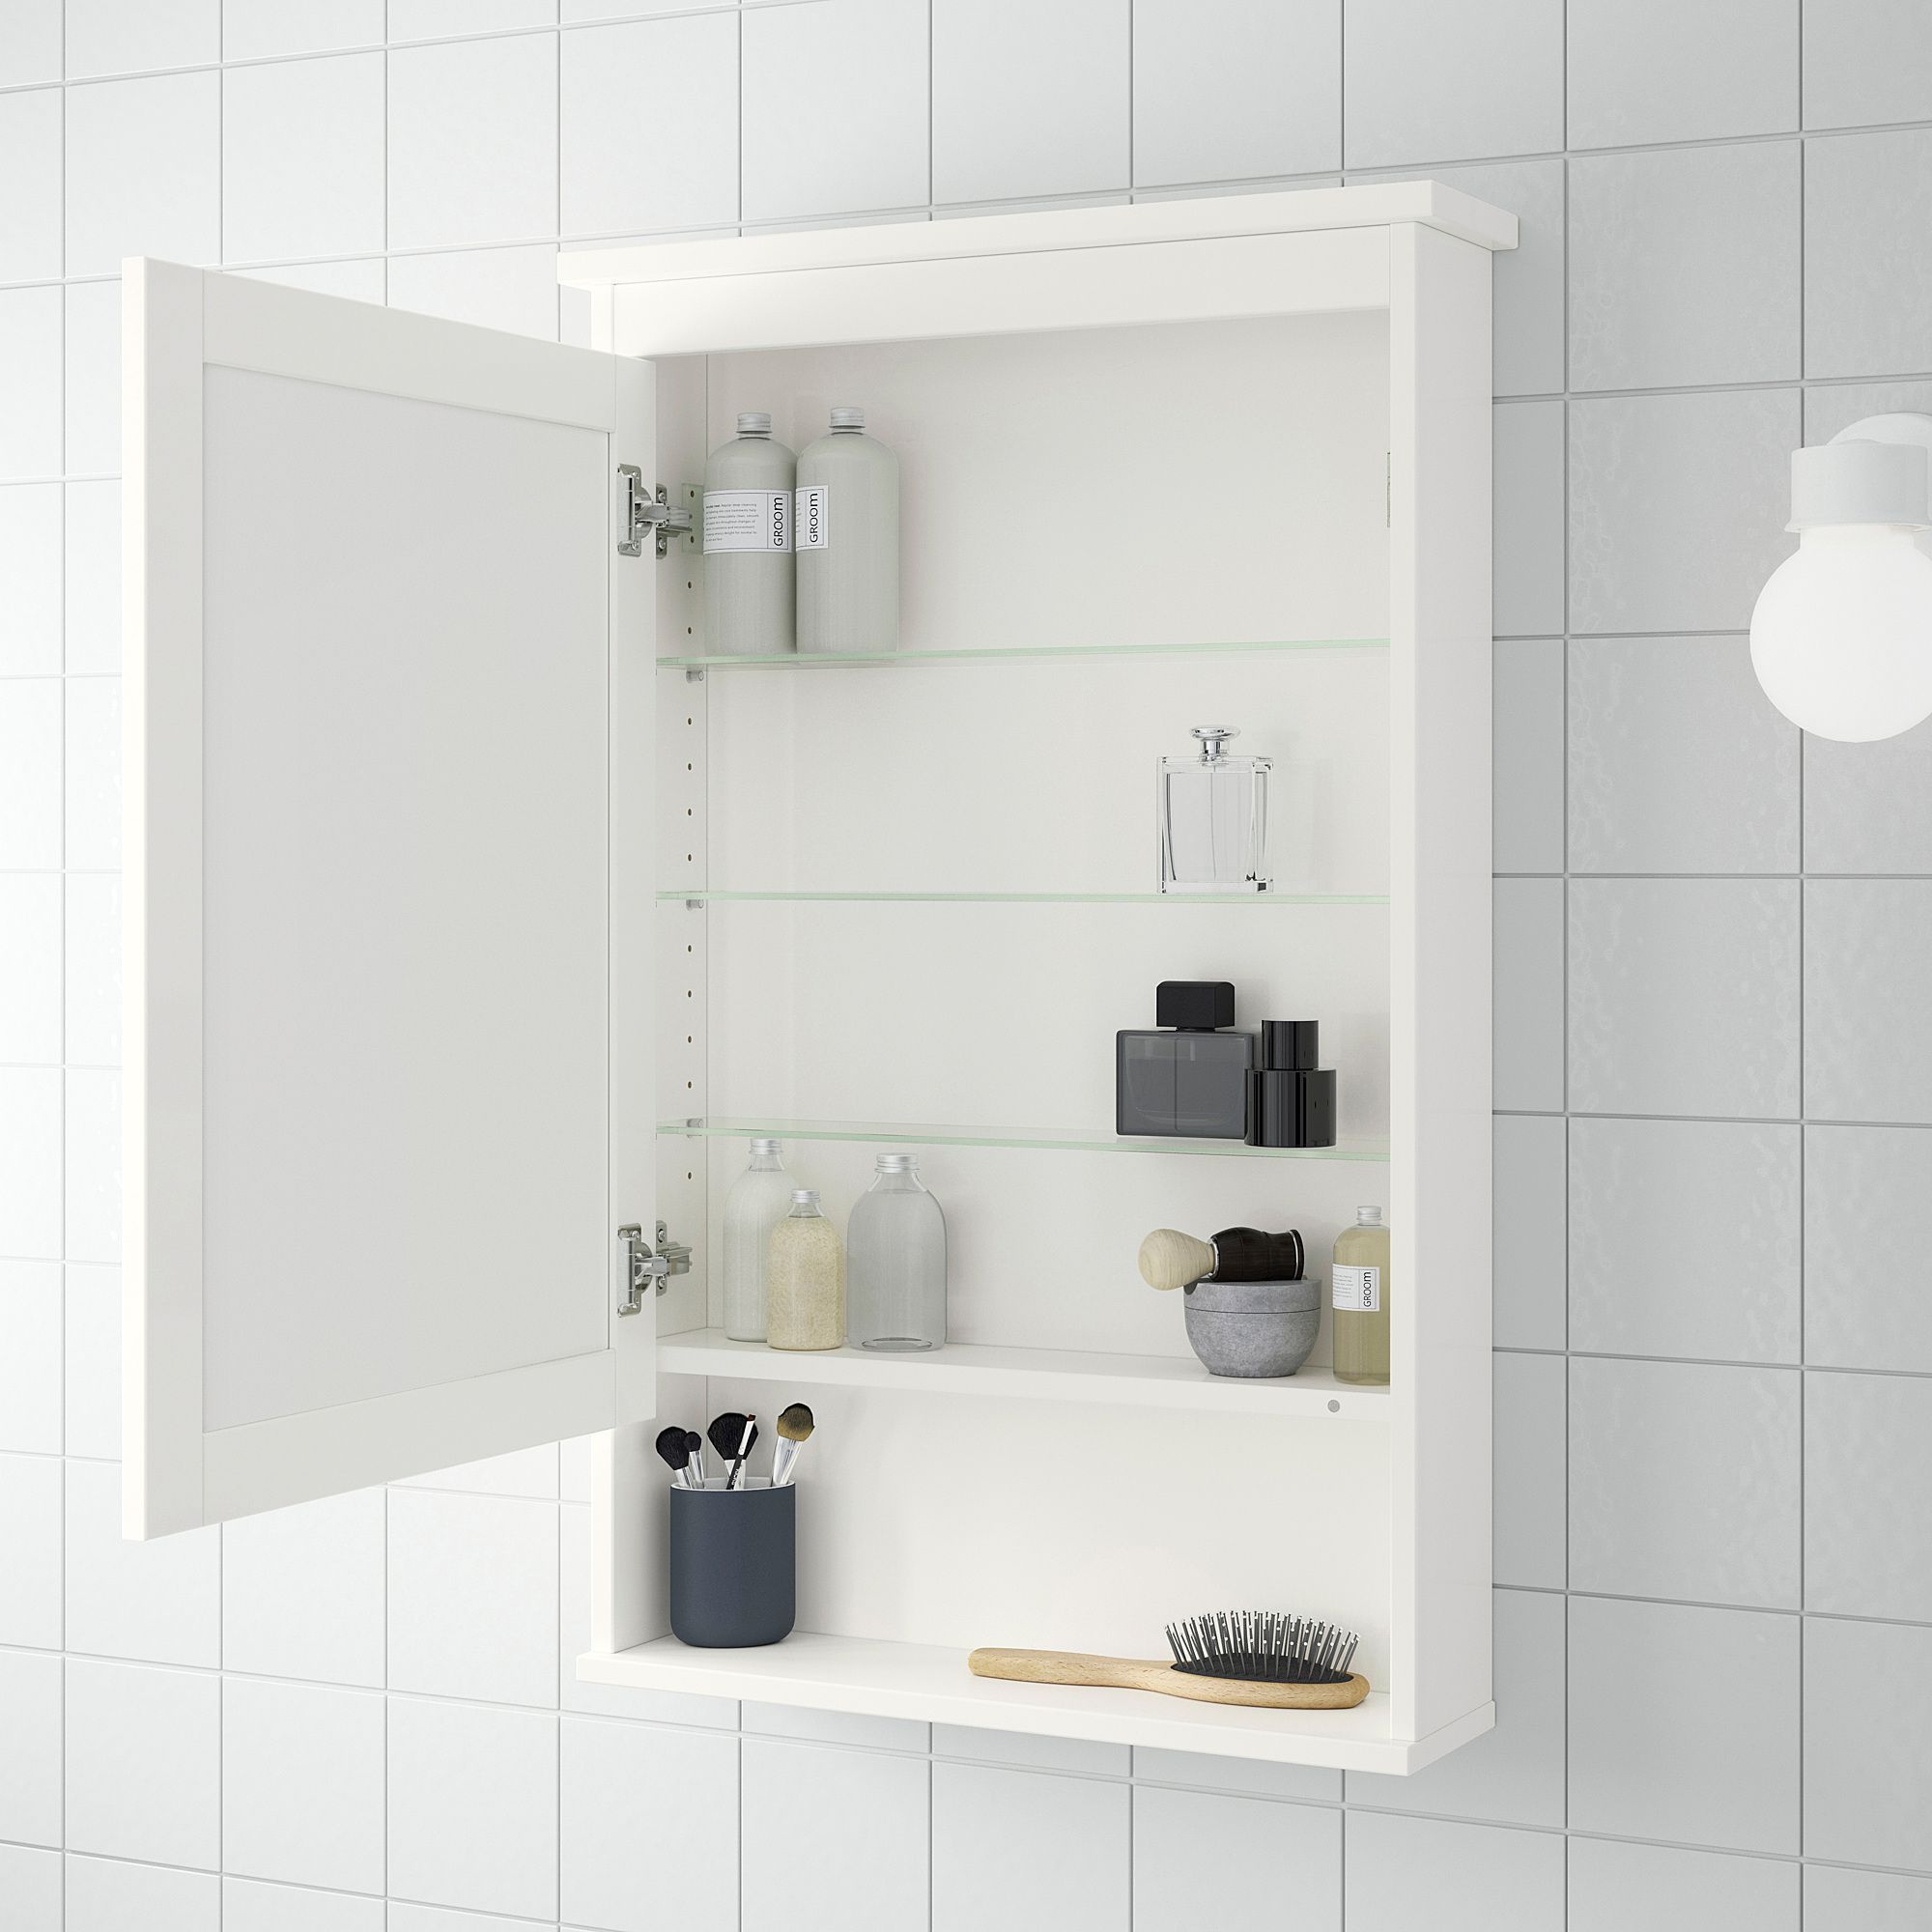 Икеа шкаф ванна. ХЕМНЭС зеркальный шкаф с 1 дверцей. ХЕМНЭС зеркальный шкаф с 1 дверцей, белый, белый 63x16x98 см. Икеа ХЕМНЭС зеркальный шкаф. Зеркало ХЕМНЭС икеа.